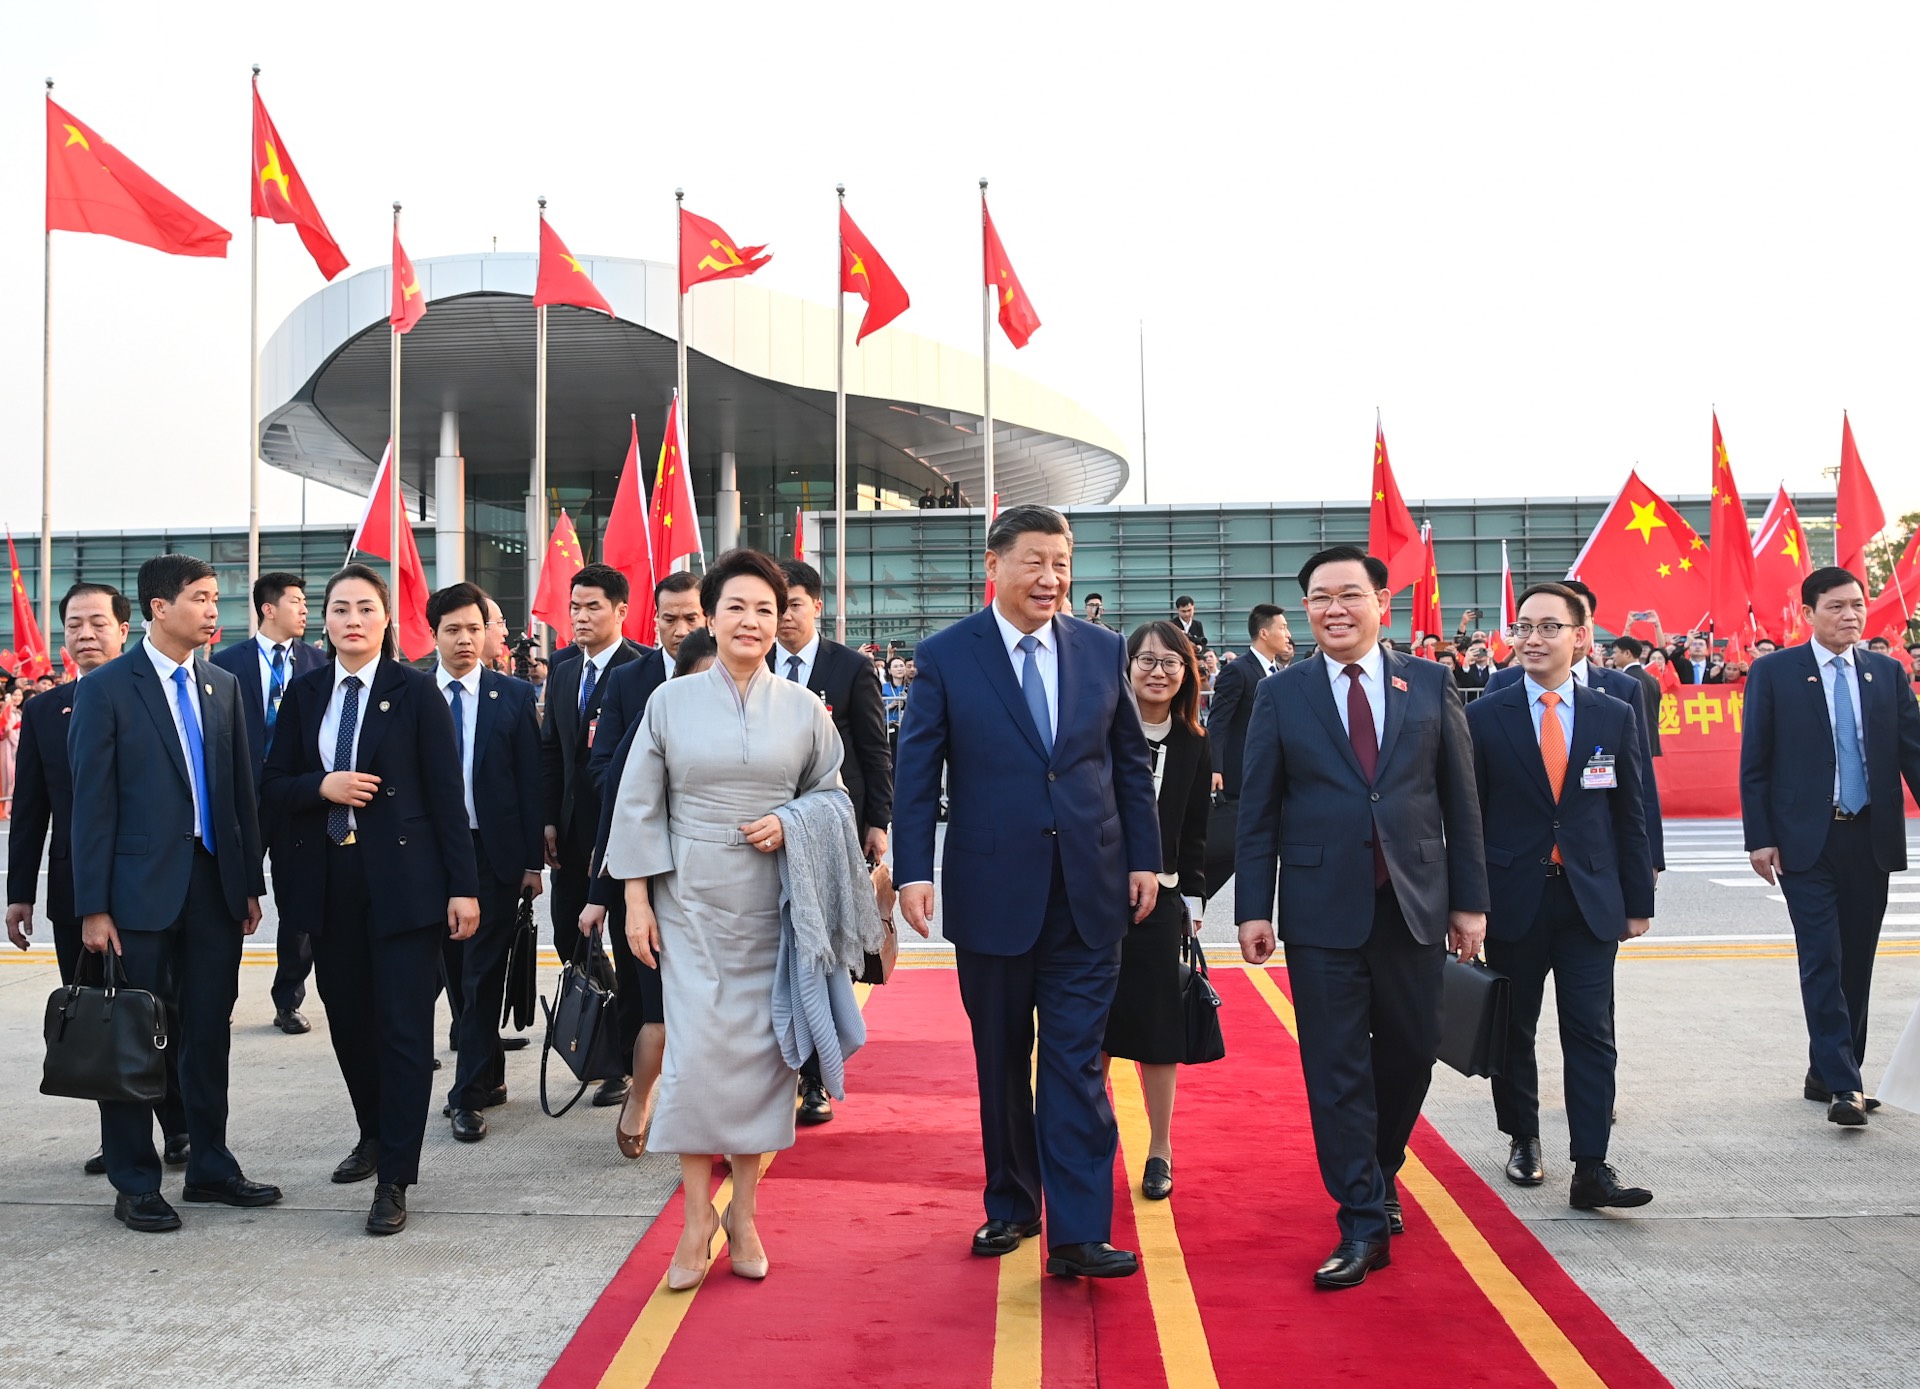 Cận cảnh Tổng bí thư, Chủ tịch Trung Quốc lên chuyên cơ rời Hà Nội - Ảnh 1.